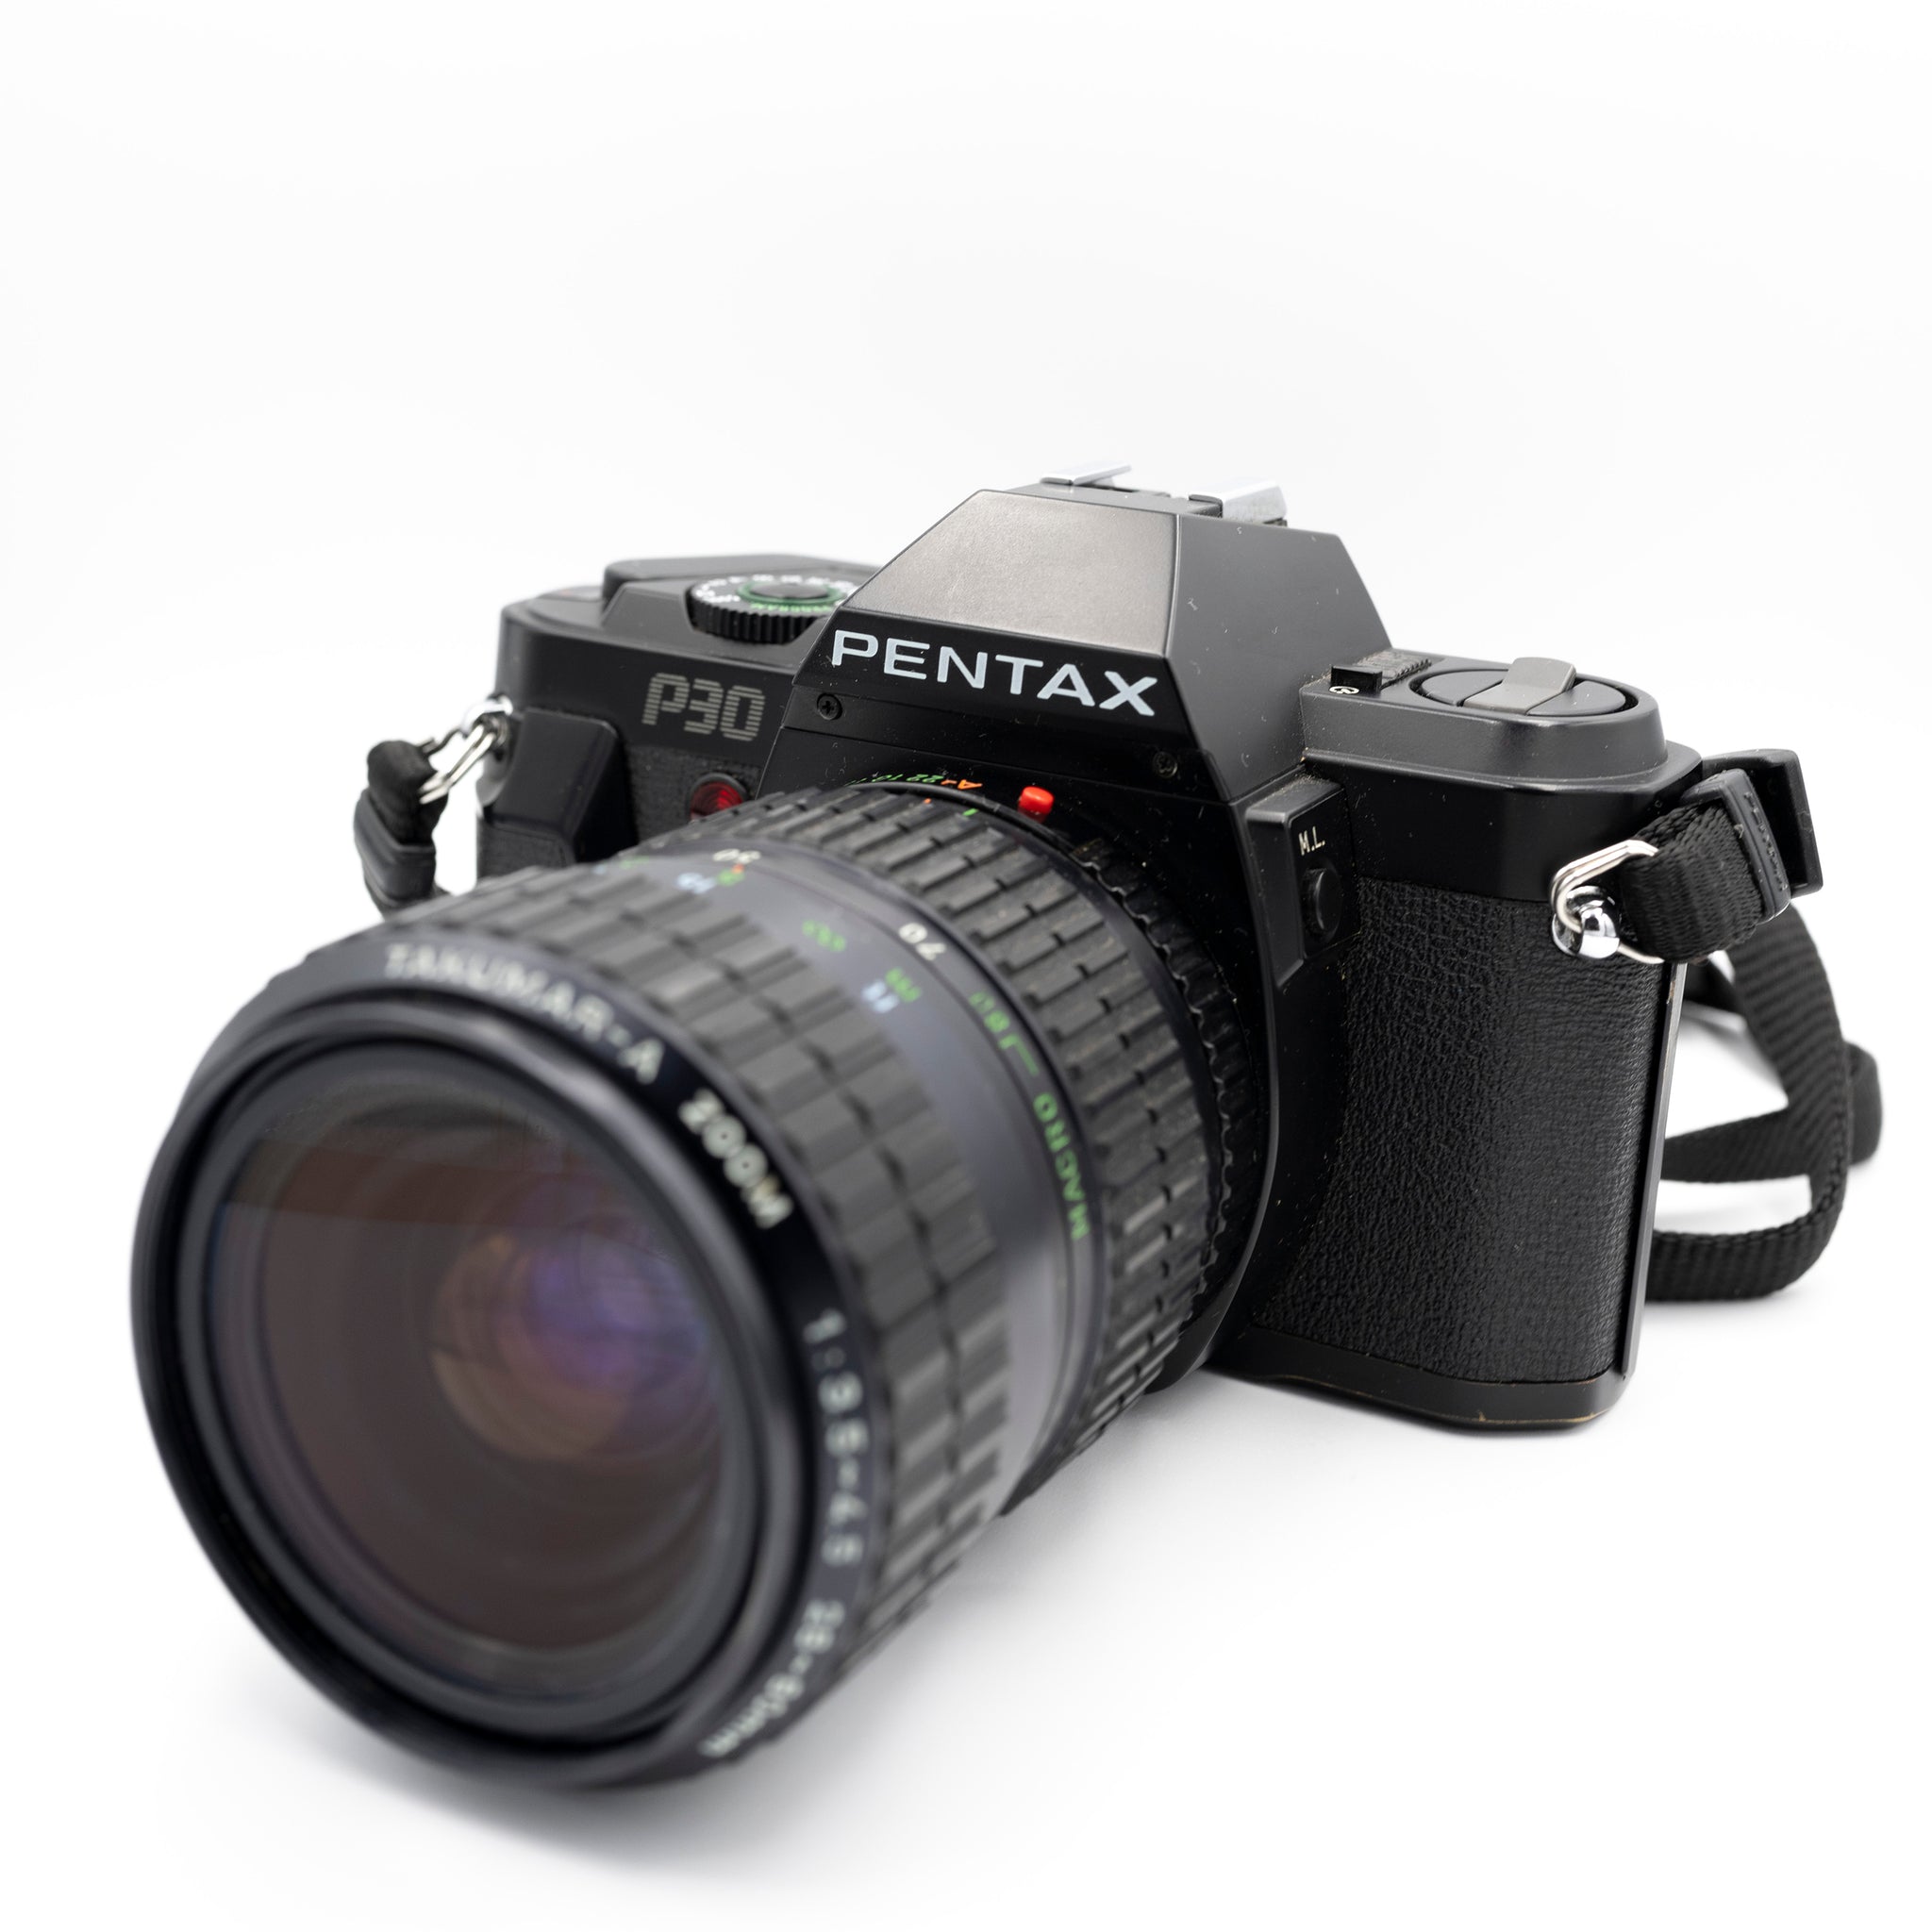 Pentax P30 + Takumar A zoom 28-80mm f/3.5-4.5